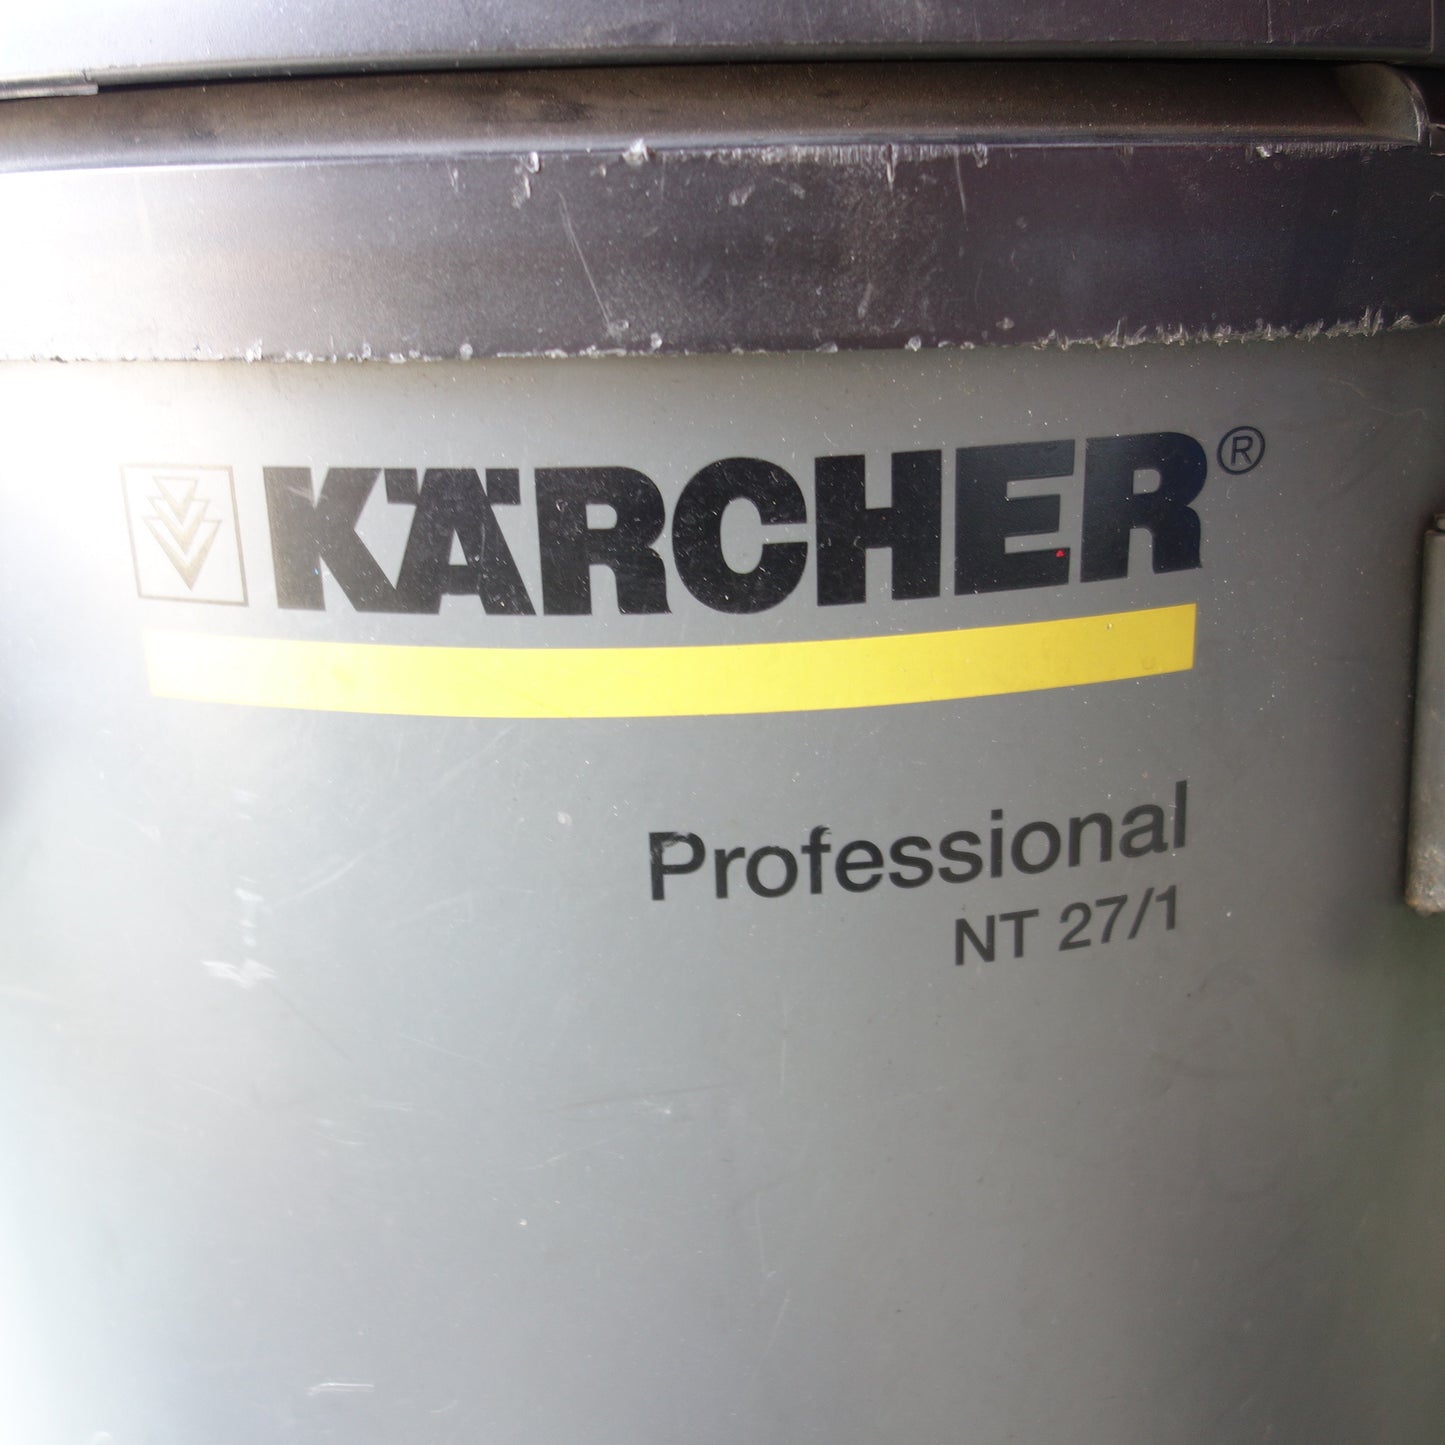 [送料無料] ◆KARCHER ケルヒャー 乾湿両用掃除機 NT27/1 クリーナー 業務用 1.428-521.0 100V 50/60Hz◆